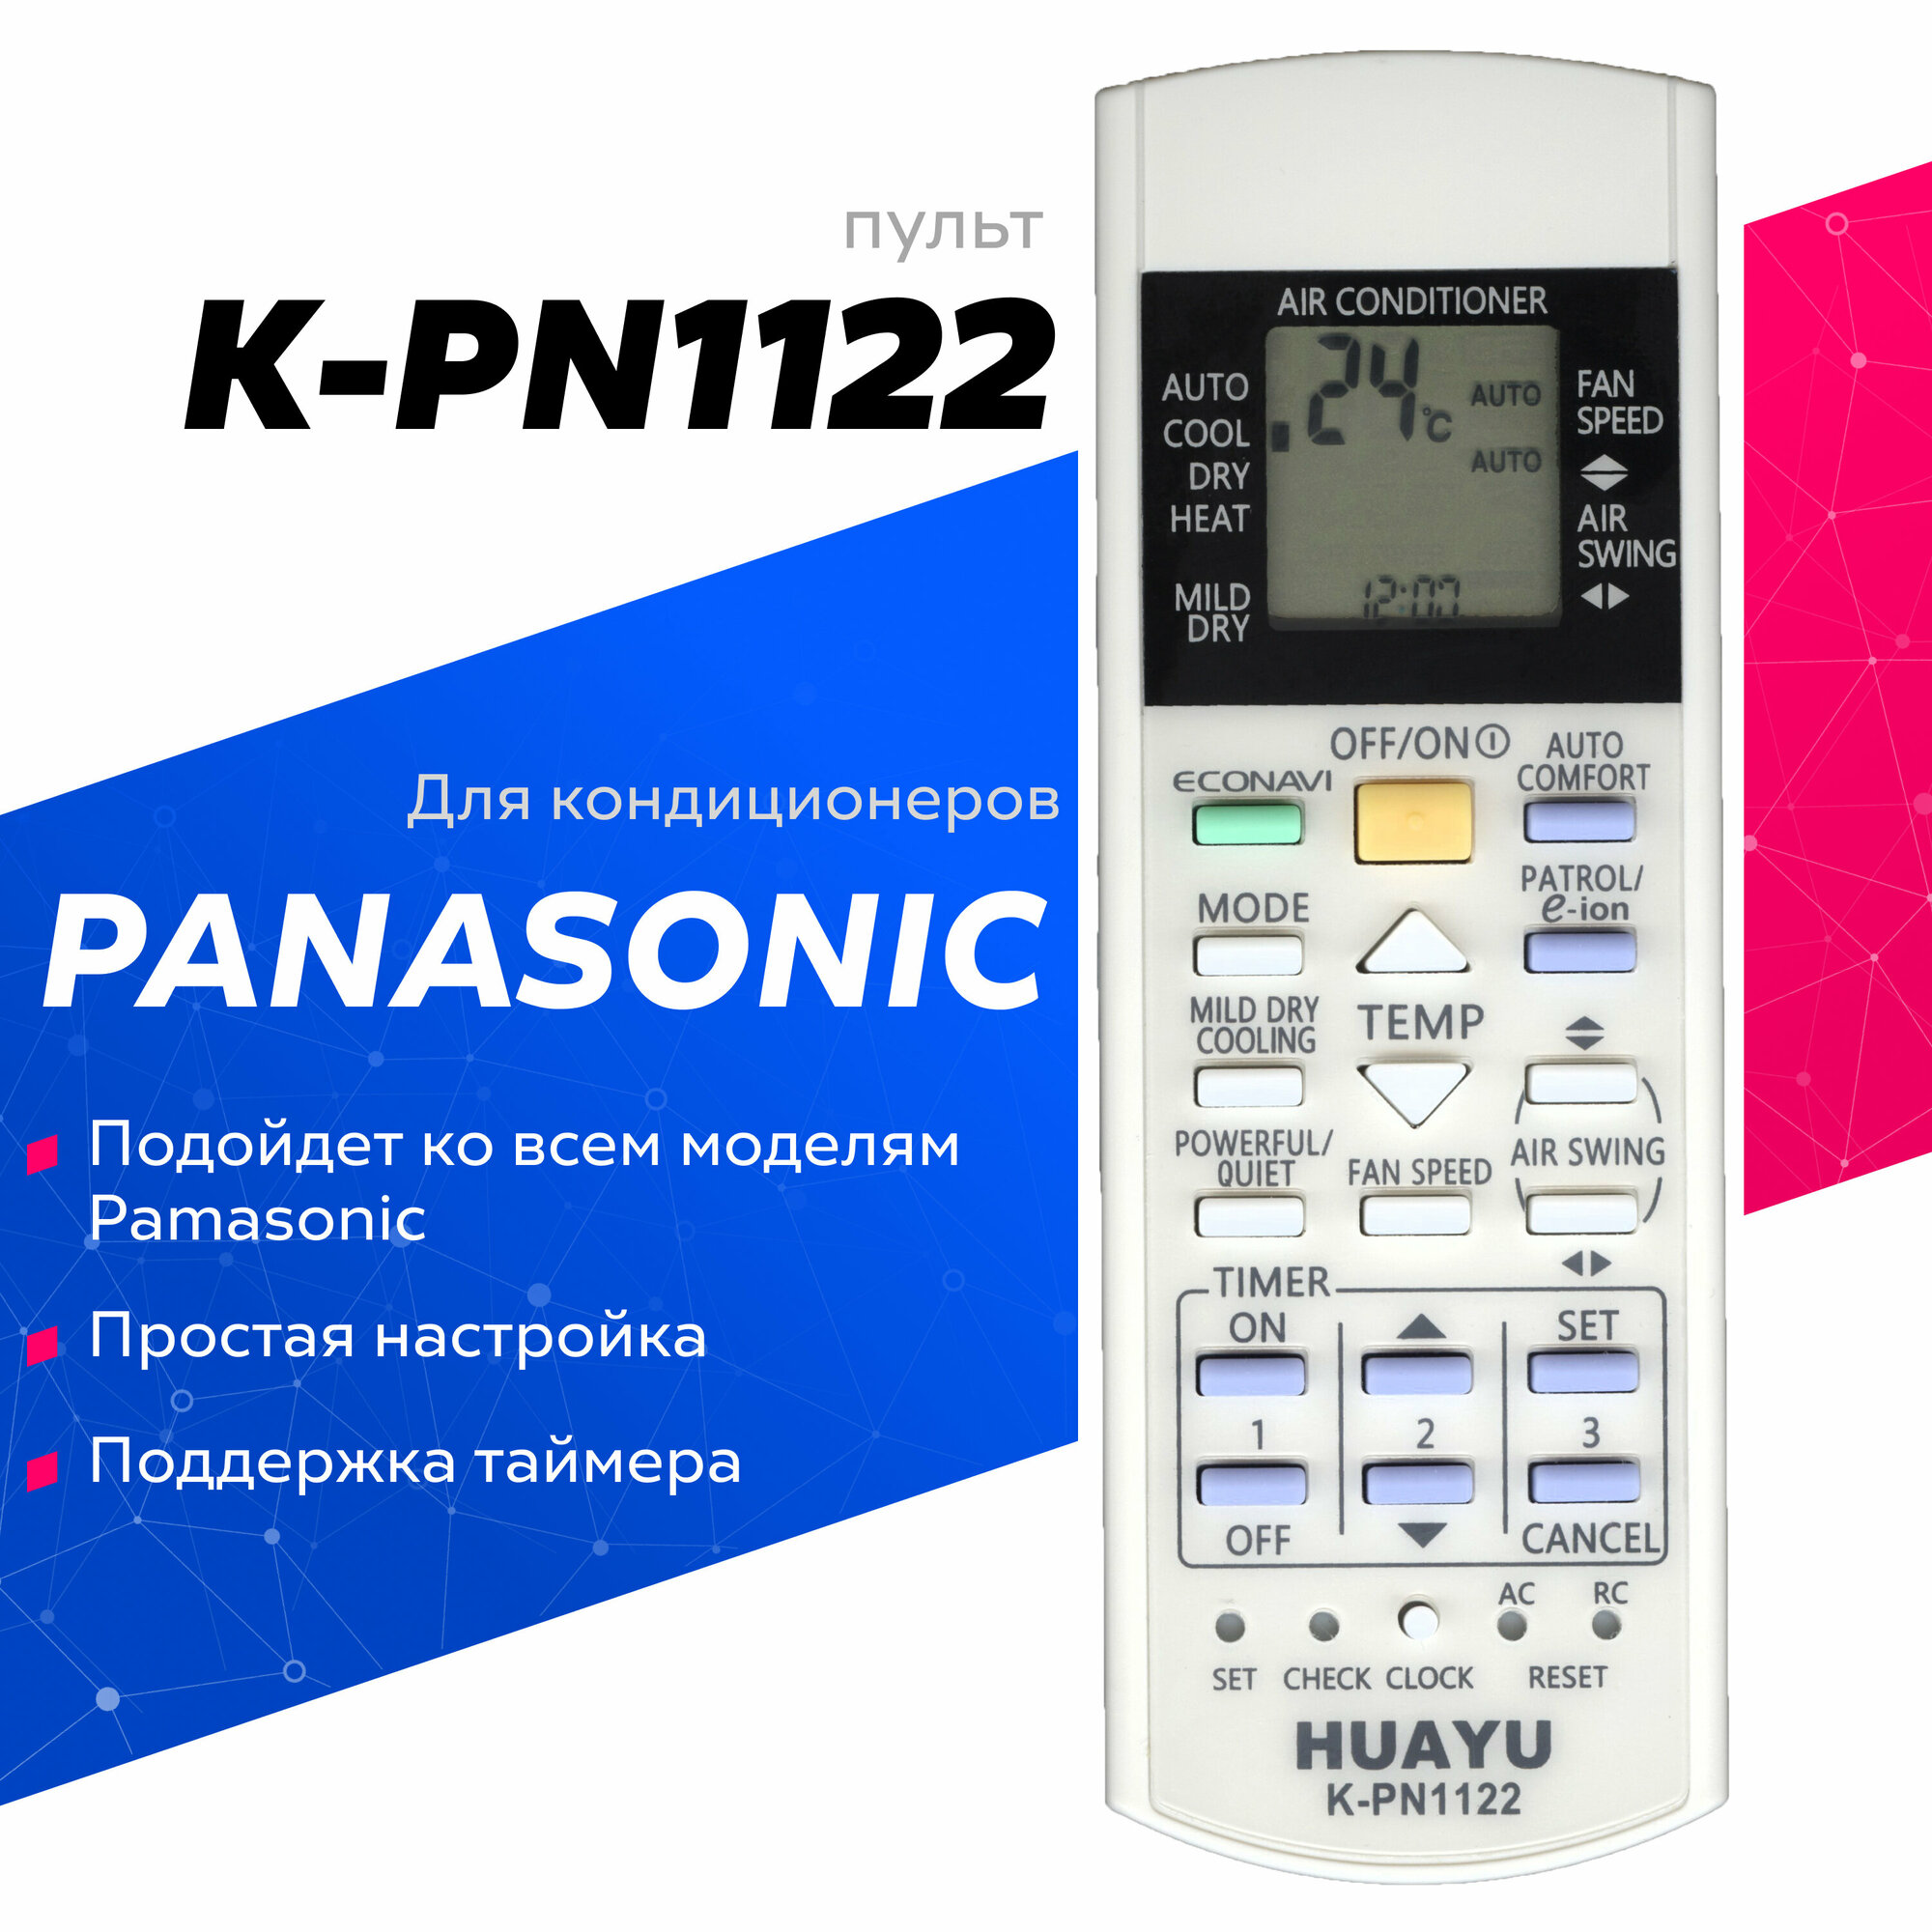 Пульт Huayu для Panasonic K-PN1122 для кондиционеров универсальный